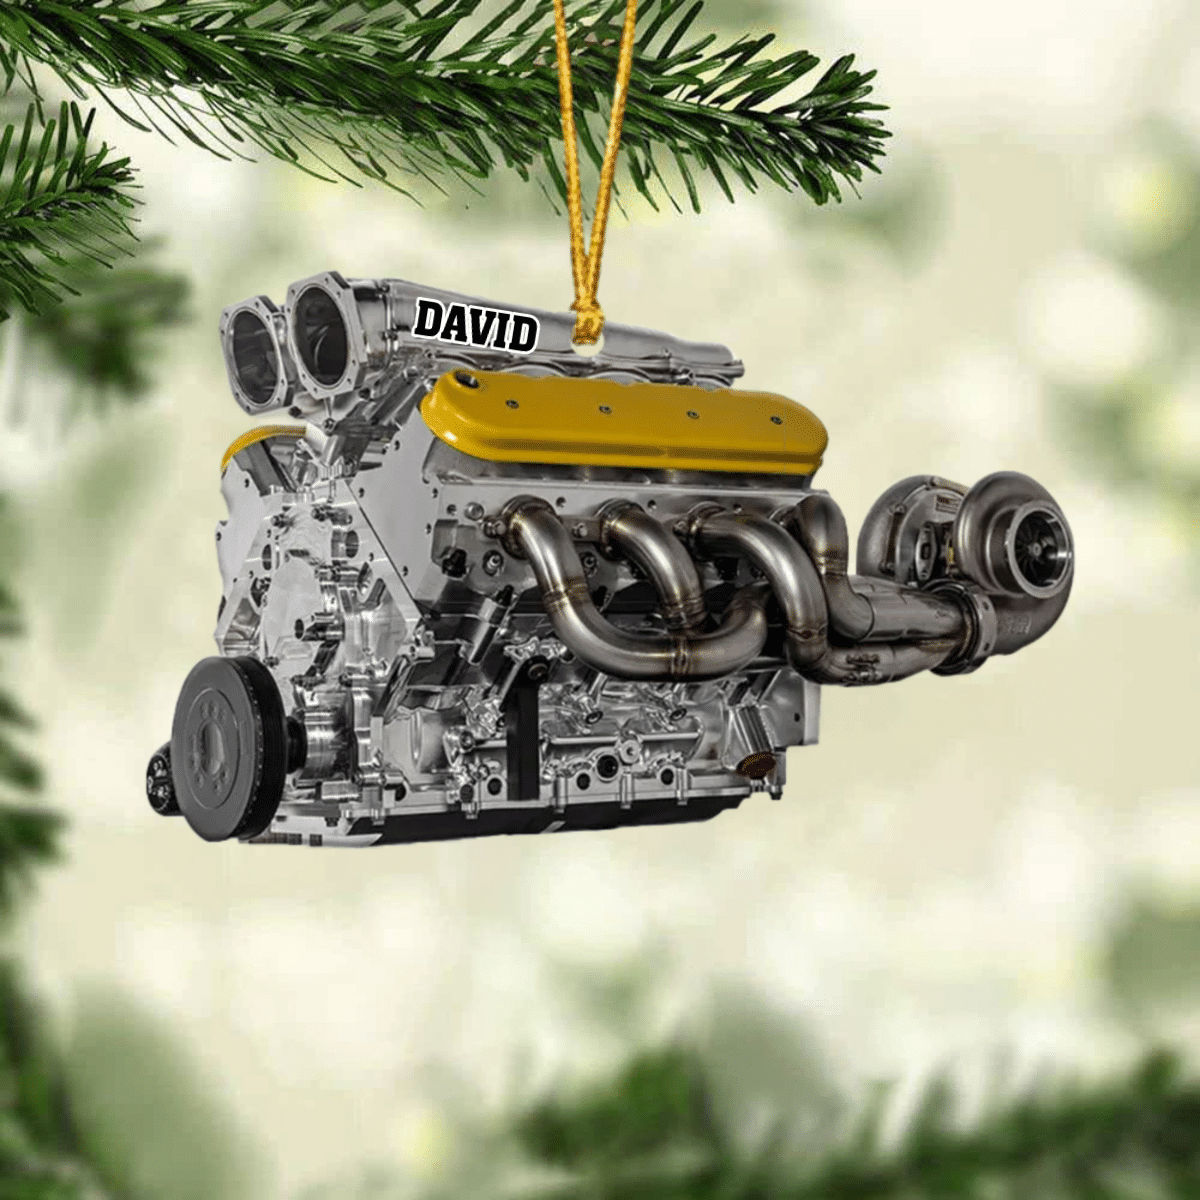 Drag Racing Hot Rod V8 Engine/ Custom Drag Racing Ornament/ Christmas Gift For Racing Lovers